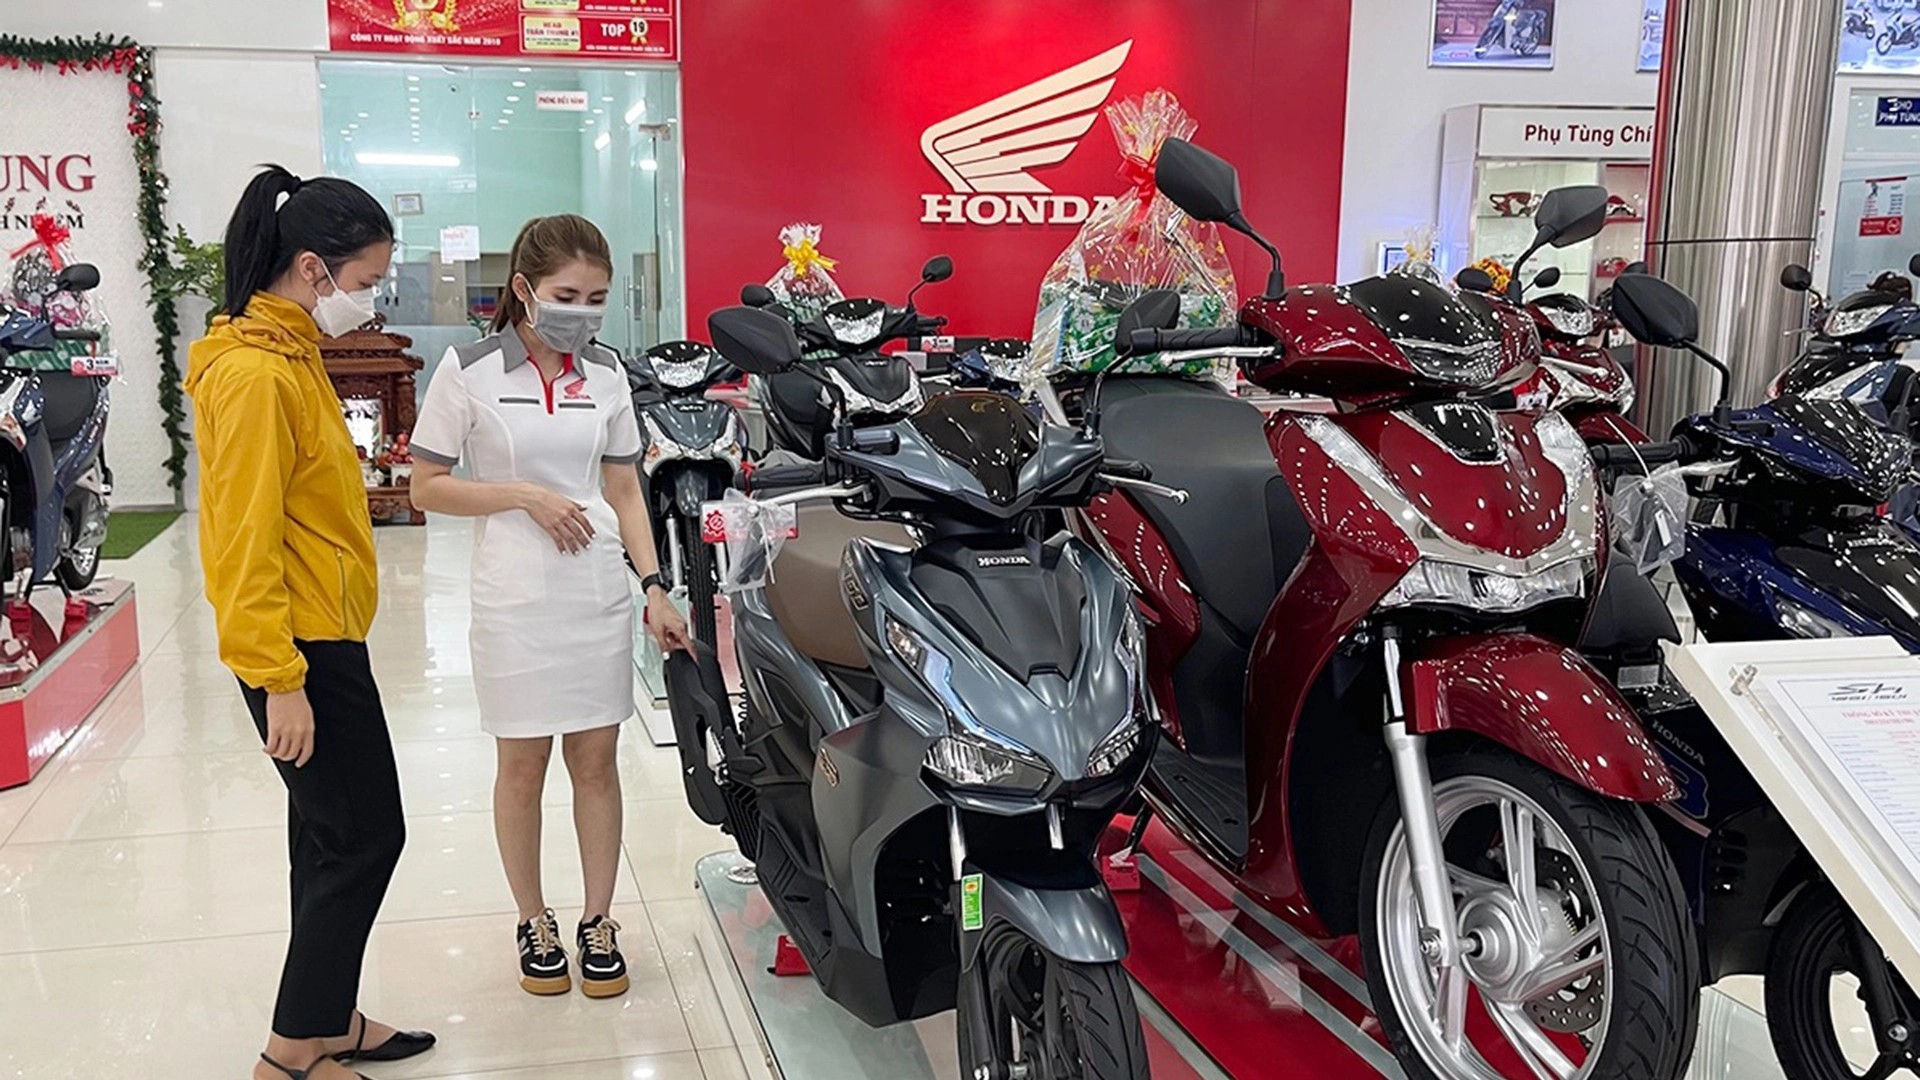 Người Việt mua gần 7.000 xe máy mỗi ngày trong quý đầu năm, giảm dần đều so với các quý trước